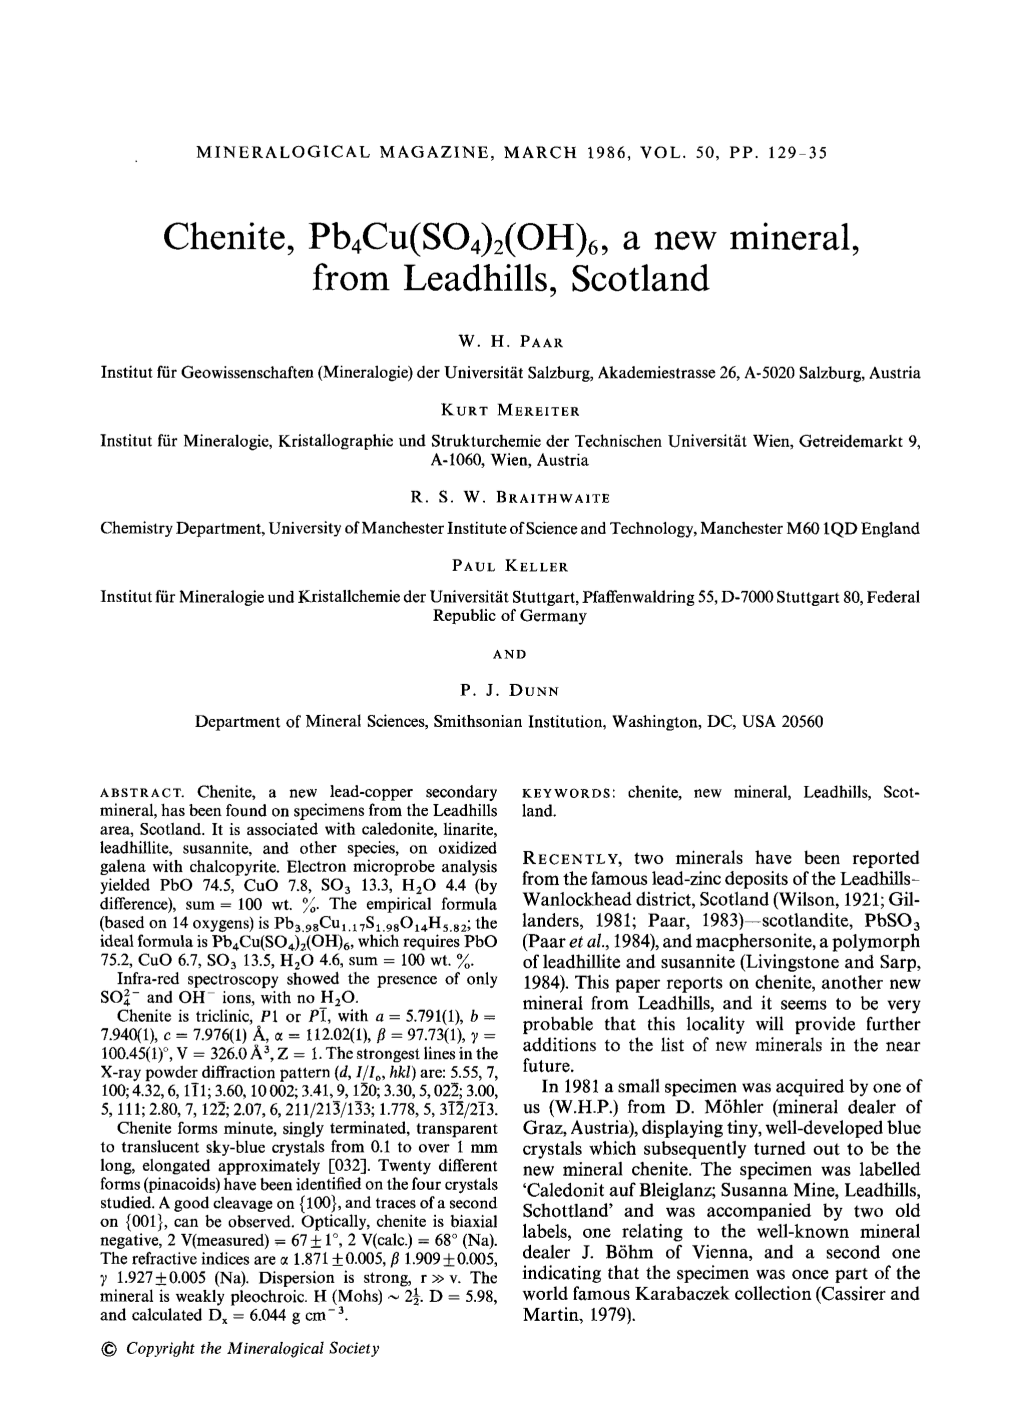 Chenite, Pb4cu(SO4)2(OH)6, a New Mineral, from Leadhills, Scotland